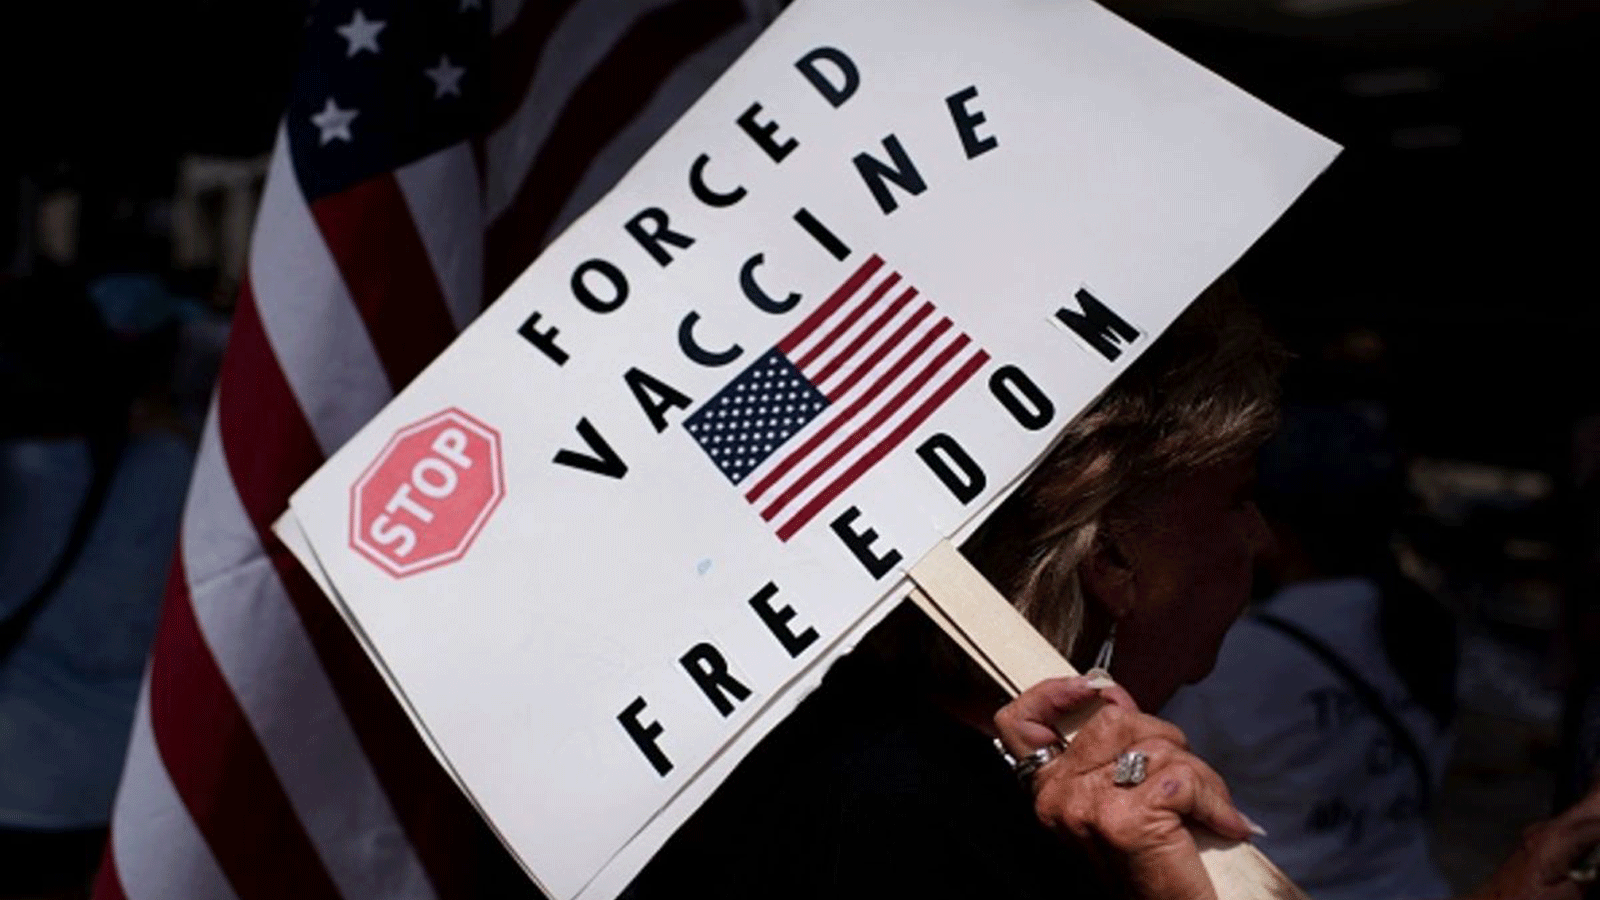 اللقاحات الإلزامية تلاقي اعتراضا شعبيا وقضاة المحكمة العليا أمام خيار صعب في اتخاذ القرارة 